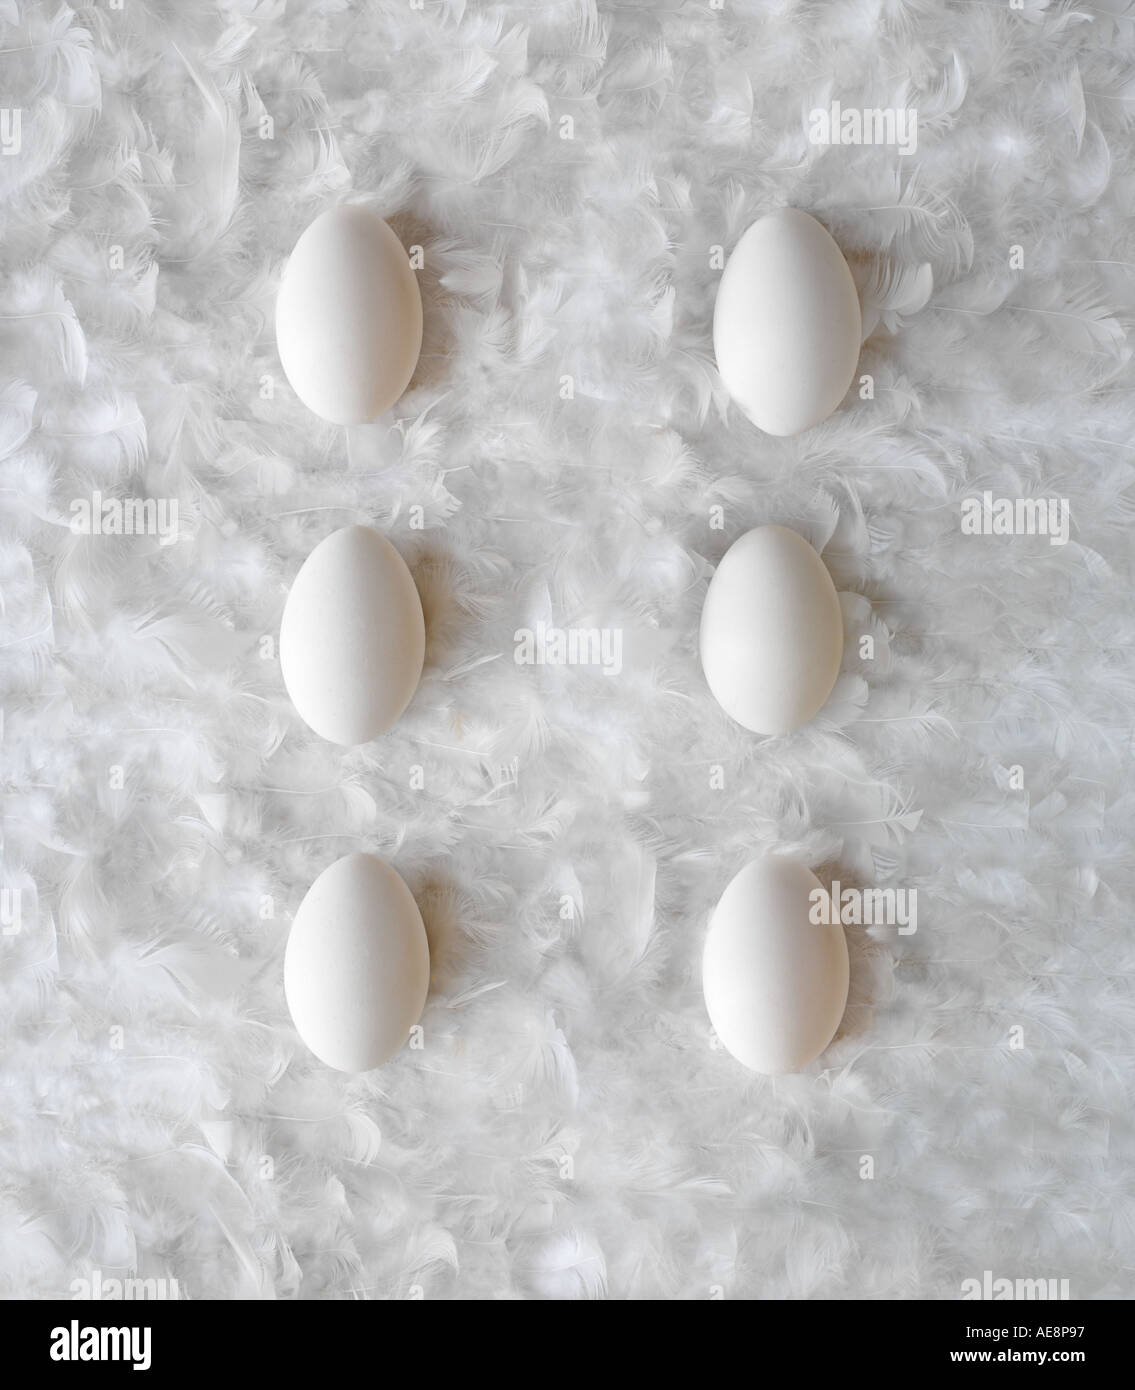 Portrait 1/2 dozen eggs on white feather background Stock Photo